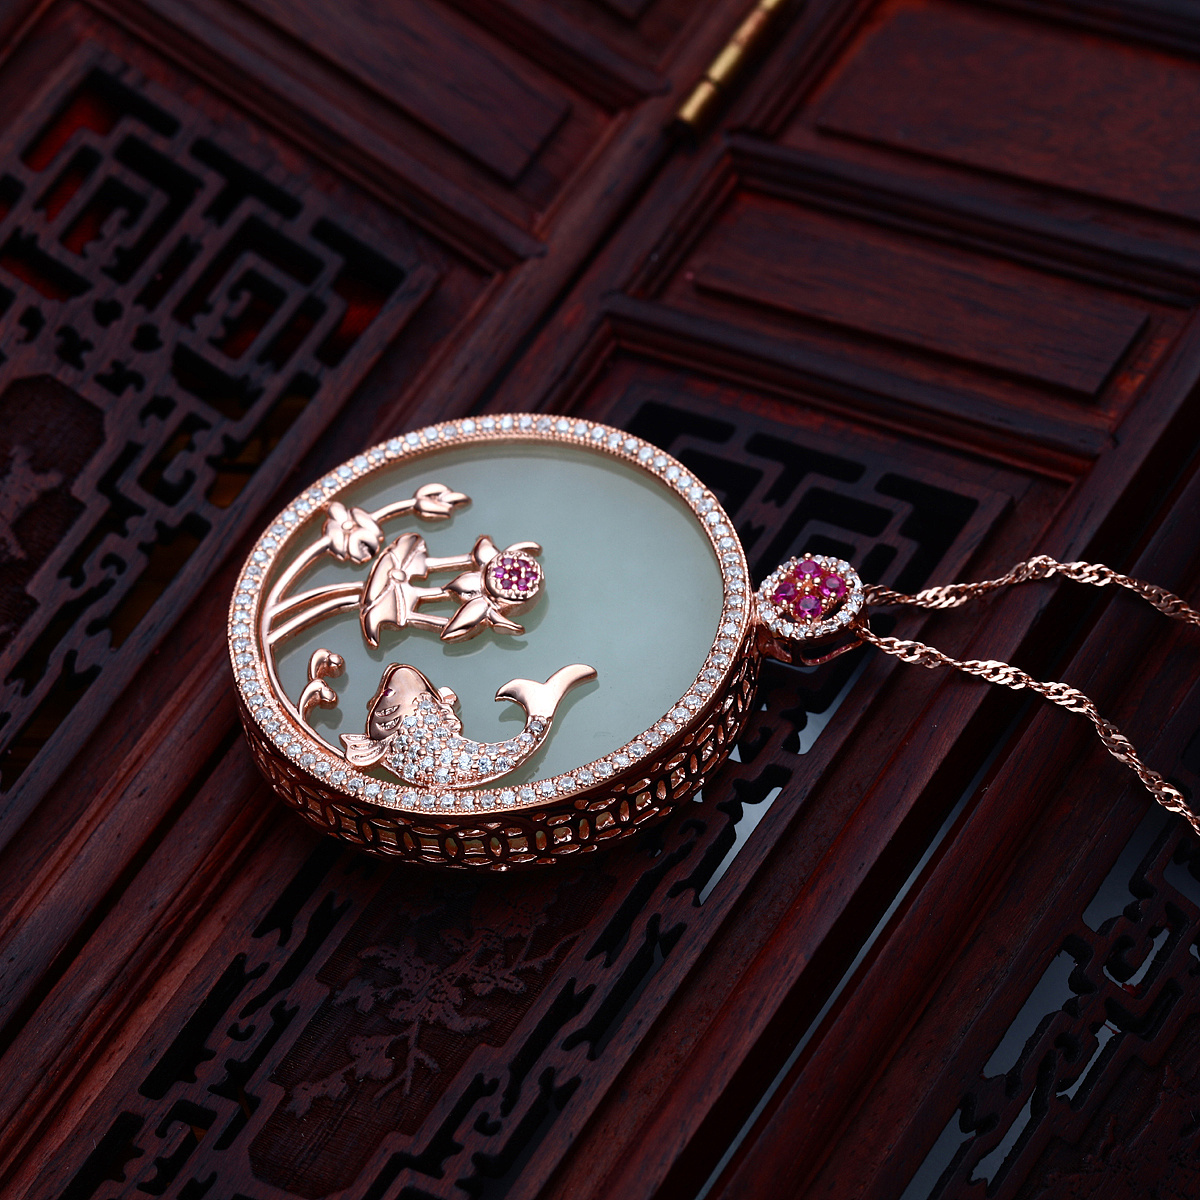 创意珠宝设计欣赏，2019中国翡翠首饰设计大赛作品赏析-优概念